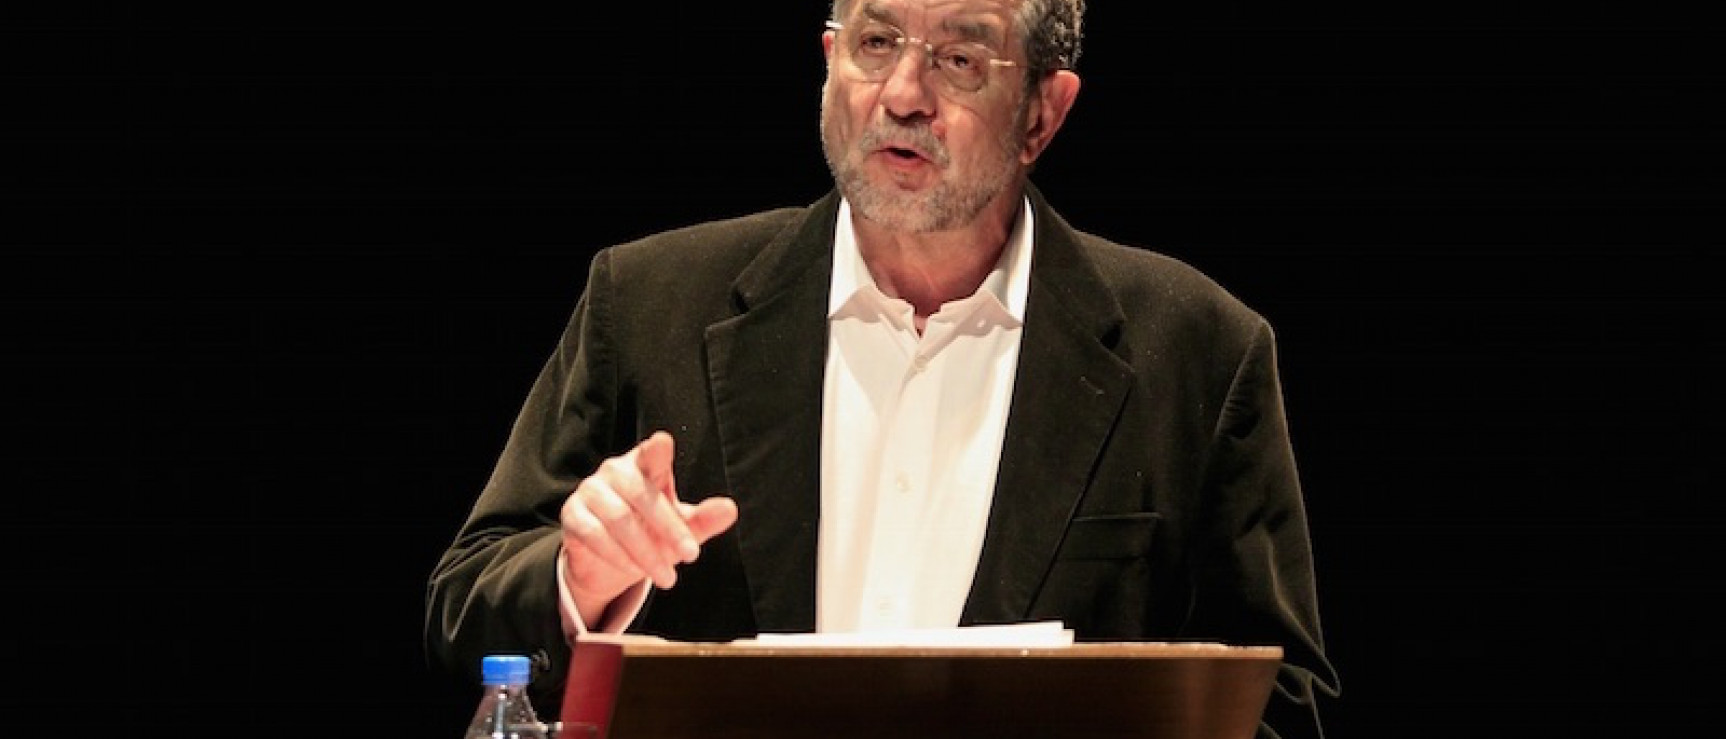 El académico José Antonio Pascual durante su intervención. Foto: Marta Jara.